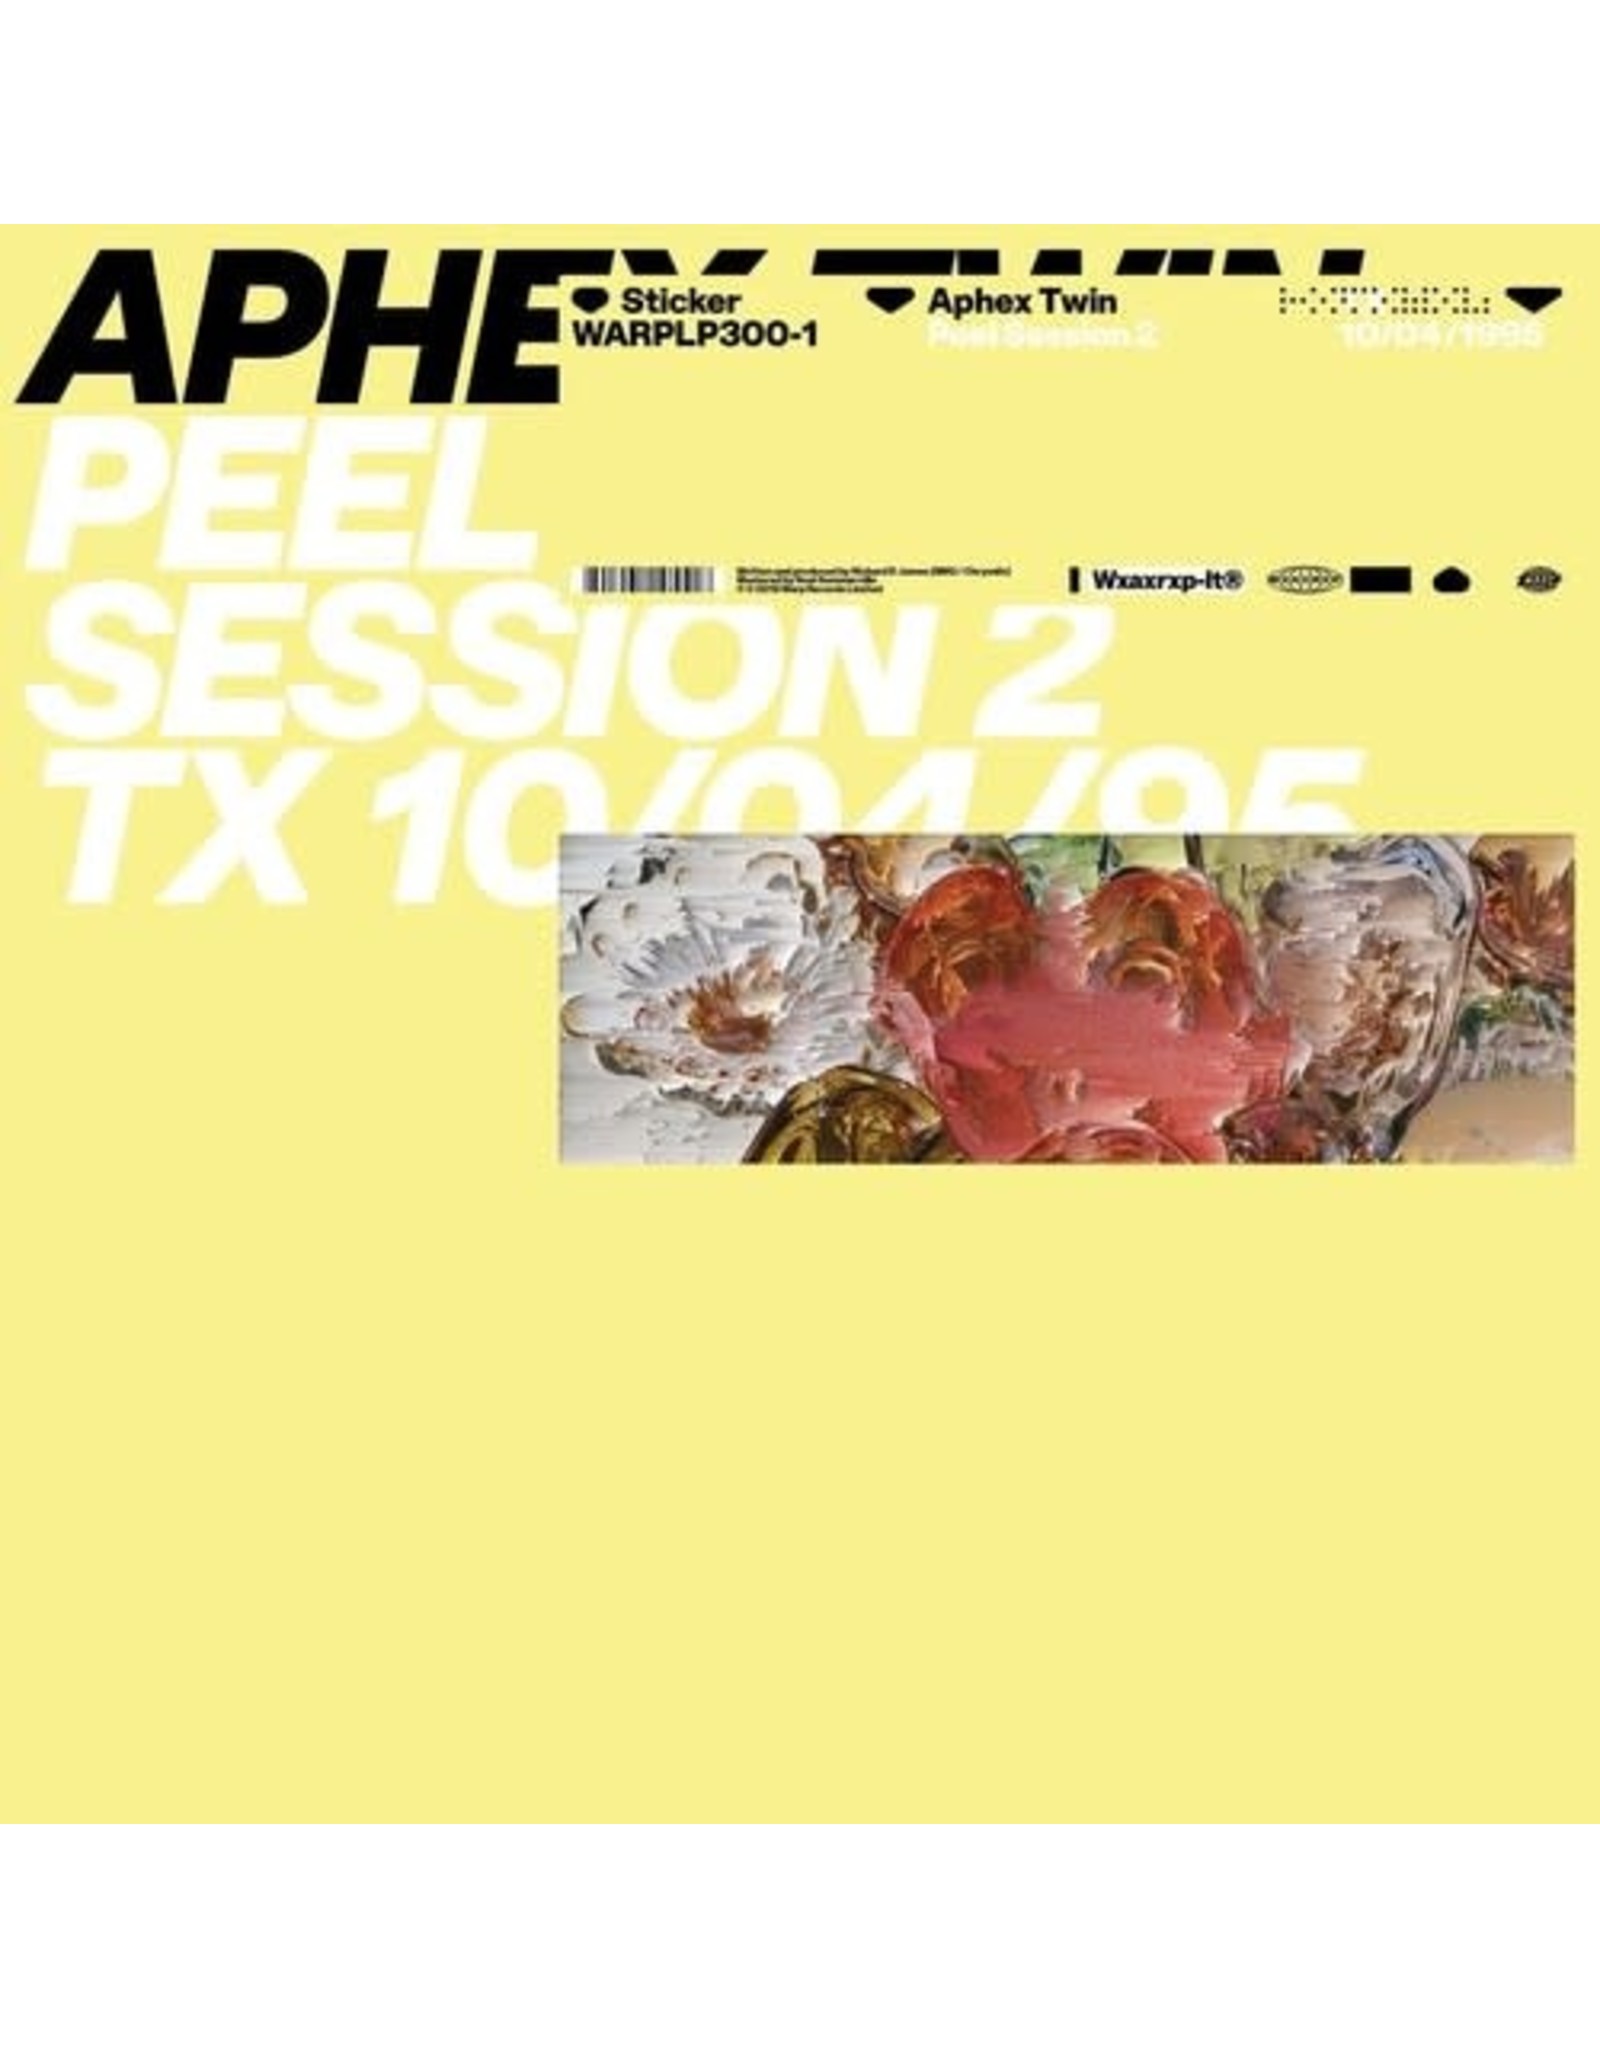 New Vinyl Aphex Twin - Peel Session 2 LP